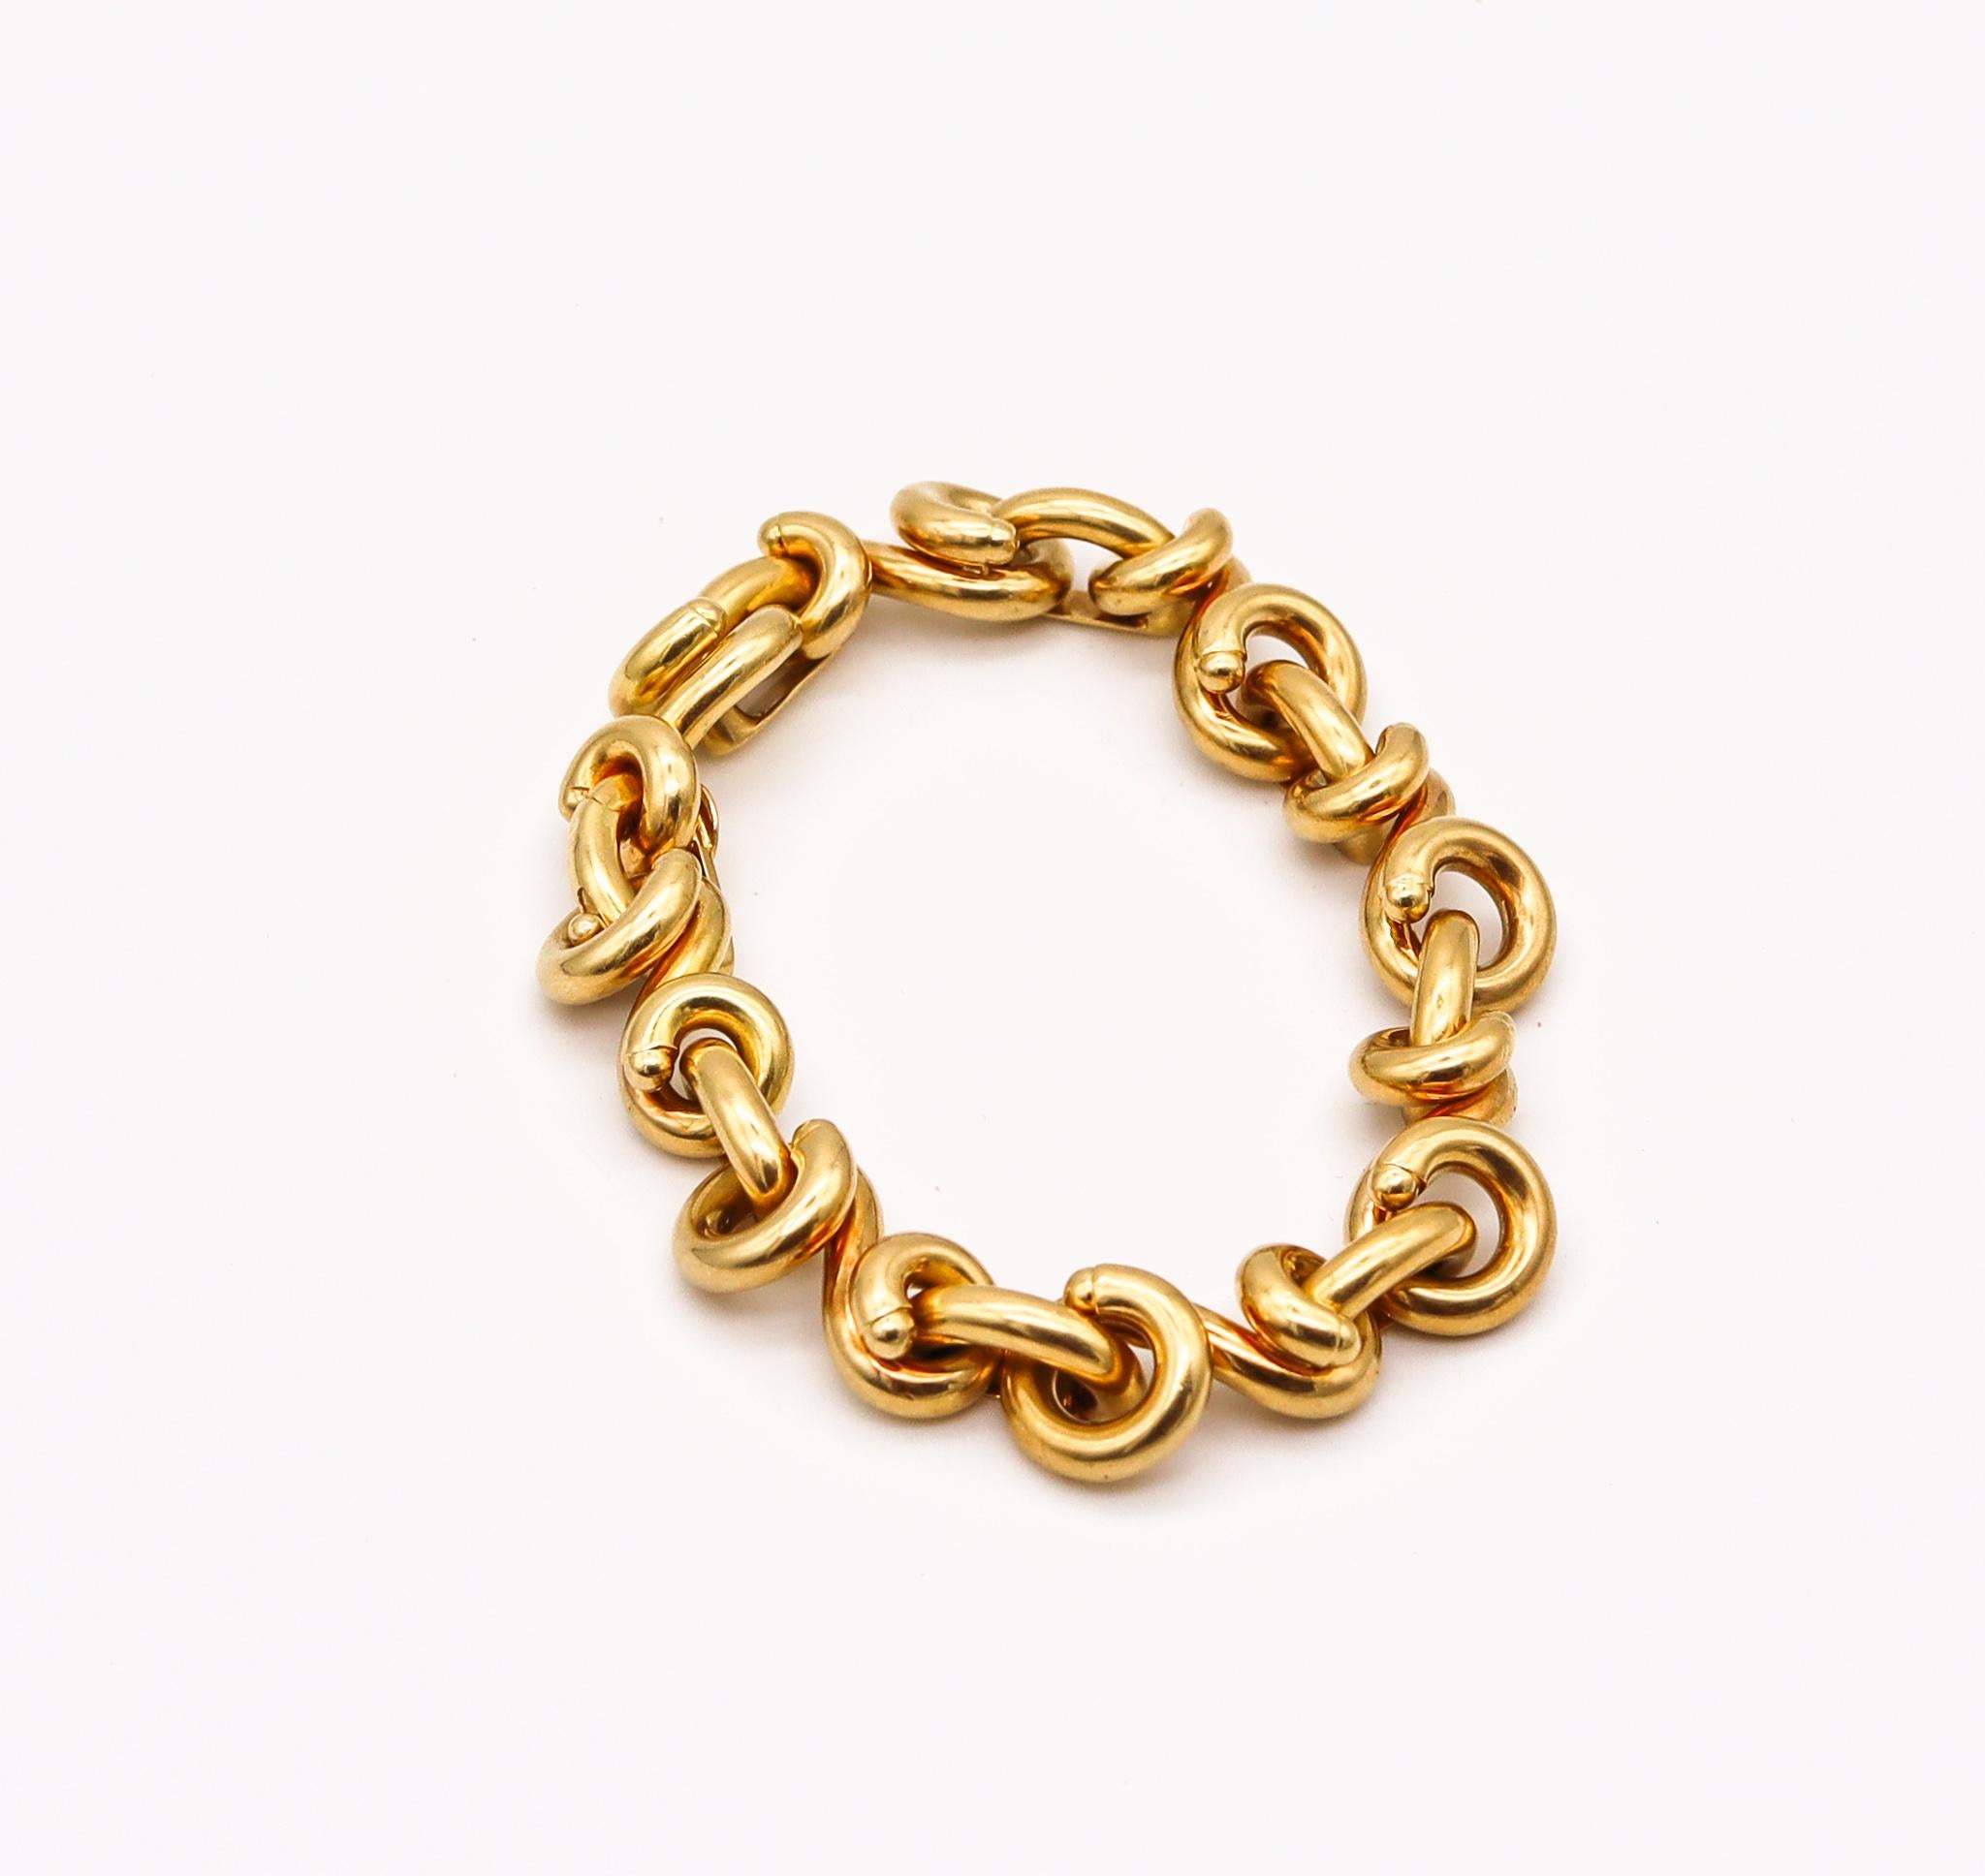 Bracelet à maillons torsadés conçu par Van Cleef & Arpels.

Bracelet très rare créé par la maison Van Cleef & Arpels à Paris dans les années 1970. Composé de multiples maillons incurvés et complexes, il est réalisé en or jaune massif de 18 carats